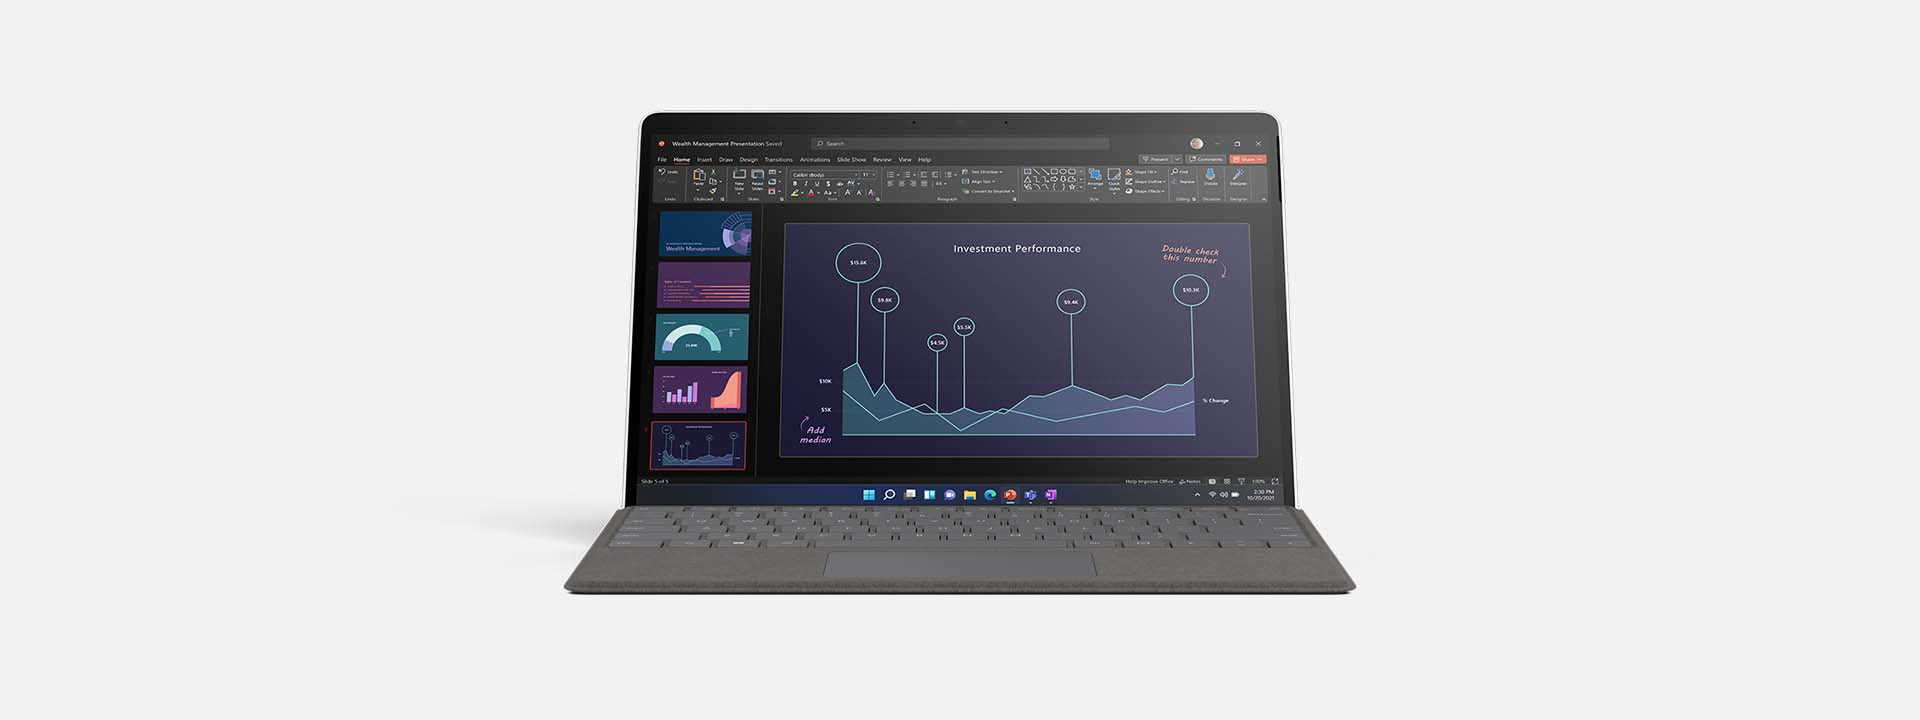 Abbildung eines Surface Pro X im Laptopmodus